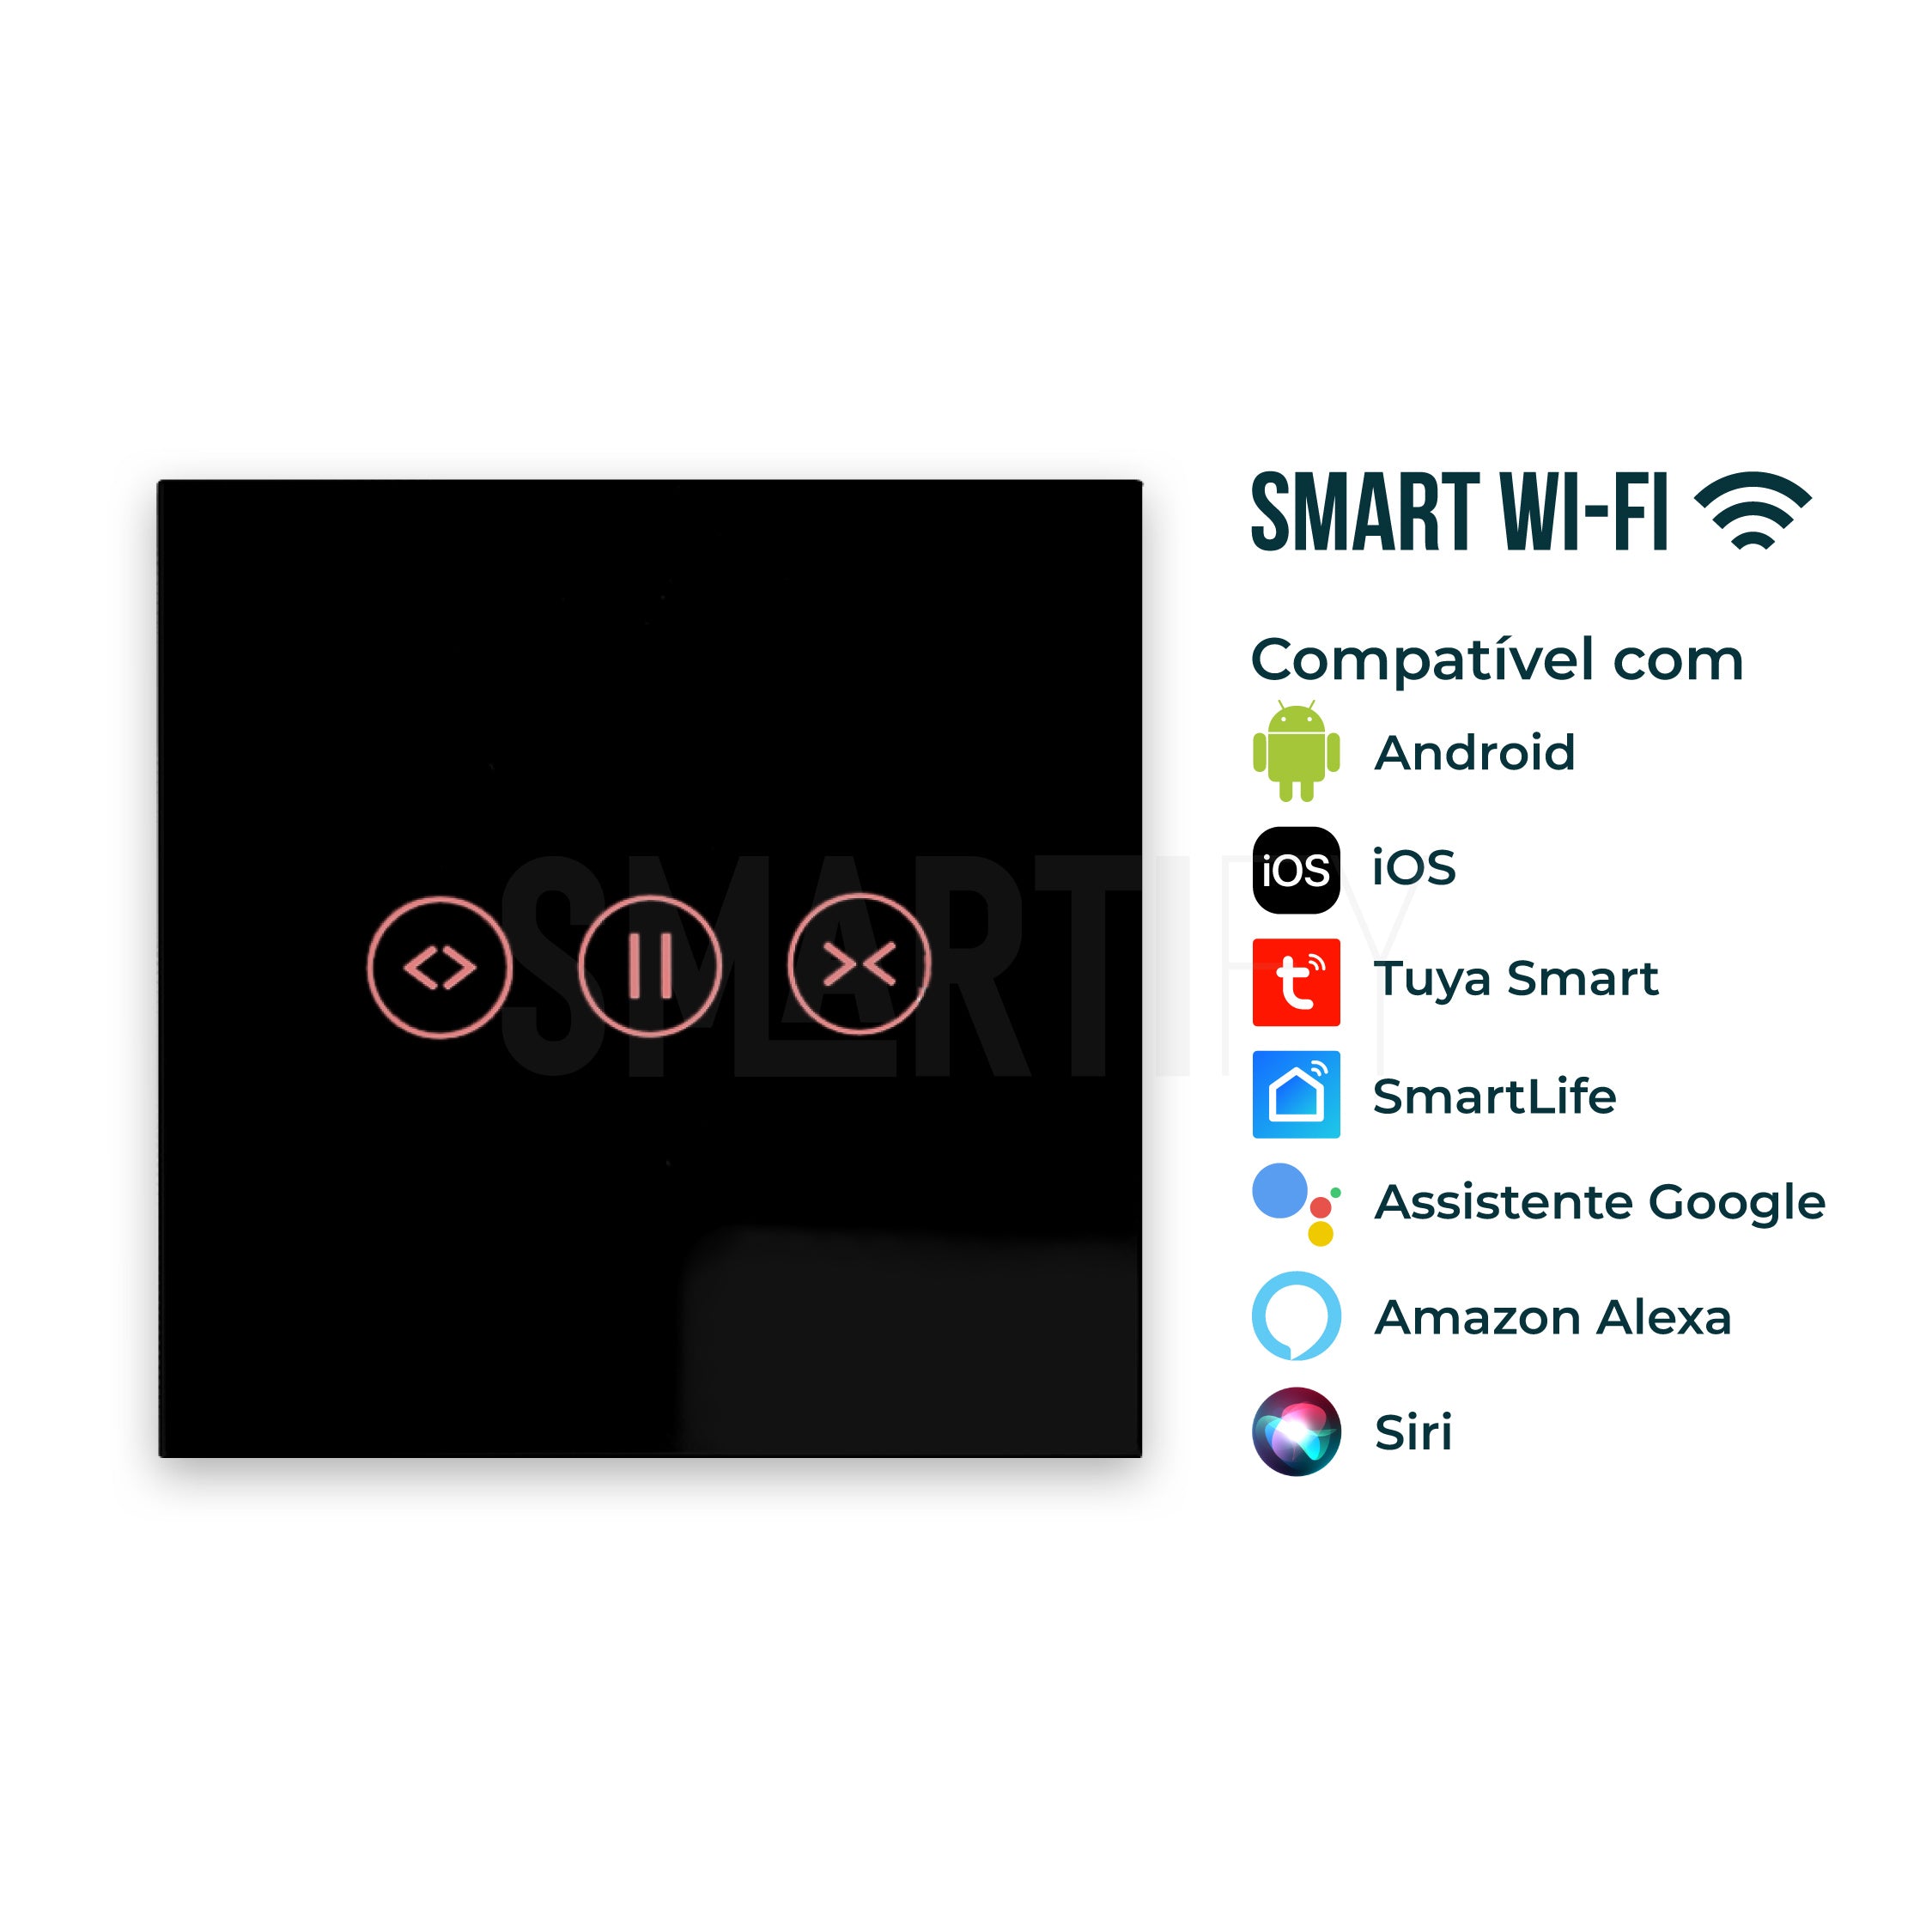 Interruptor de Estores Inteligente WiFi Smartify - Preto - Smartify - Casa Inteligente - Smart Home - Domotica - Casas Inteligentes